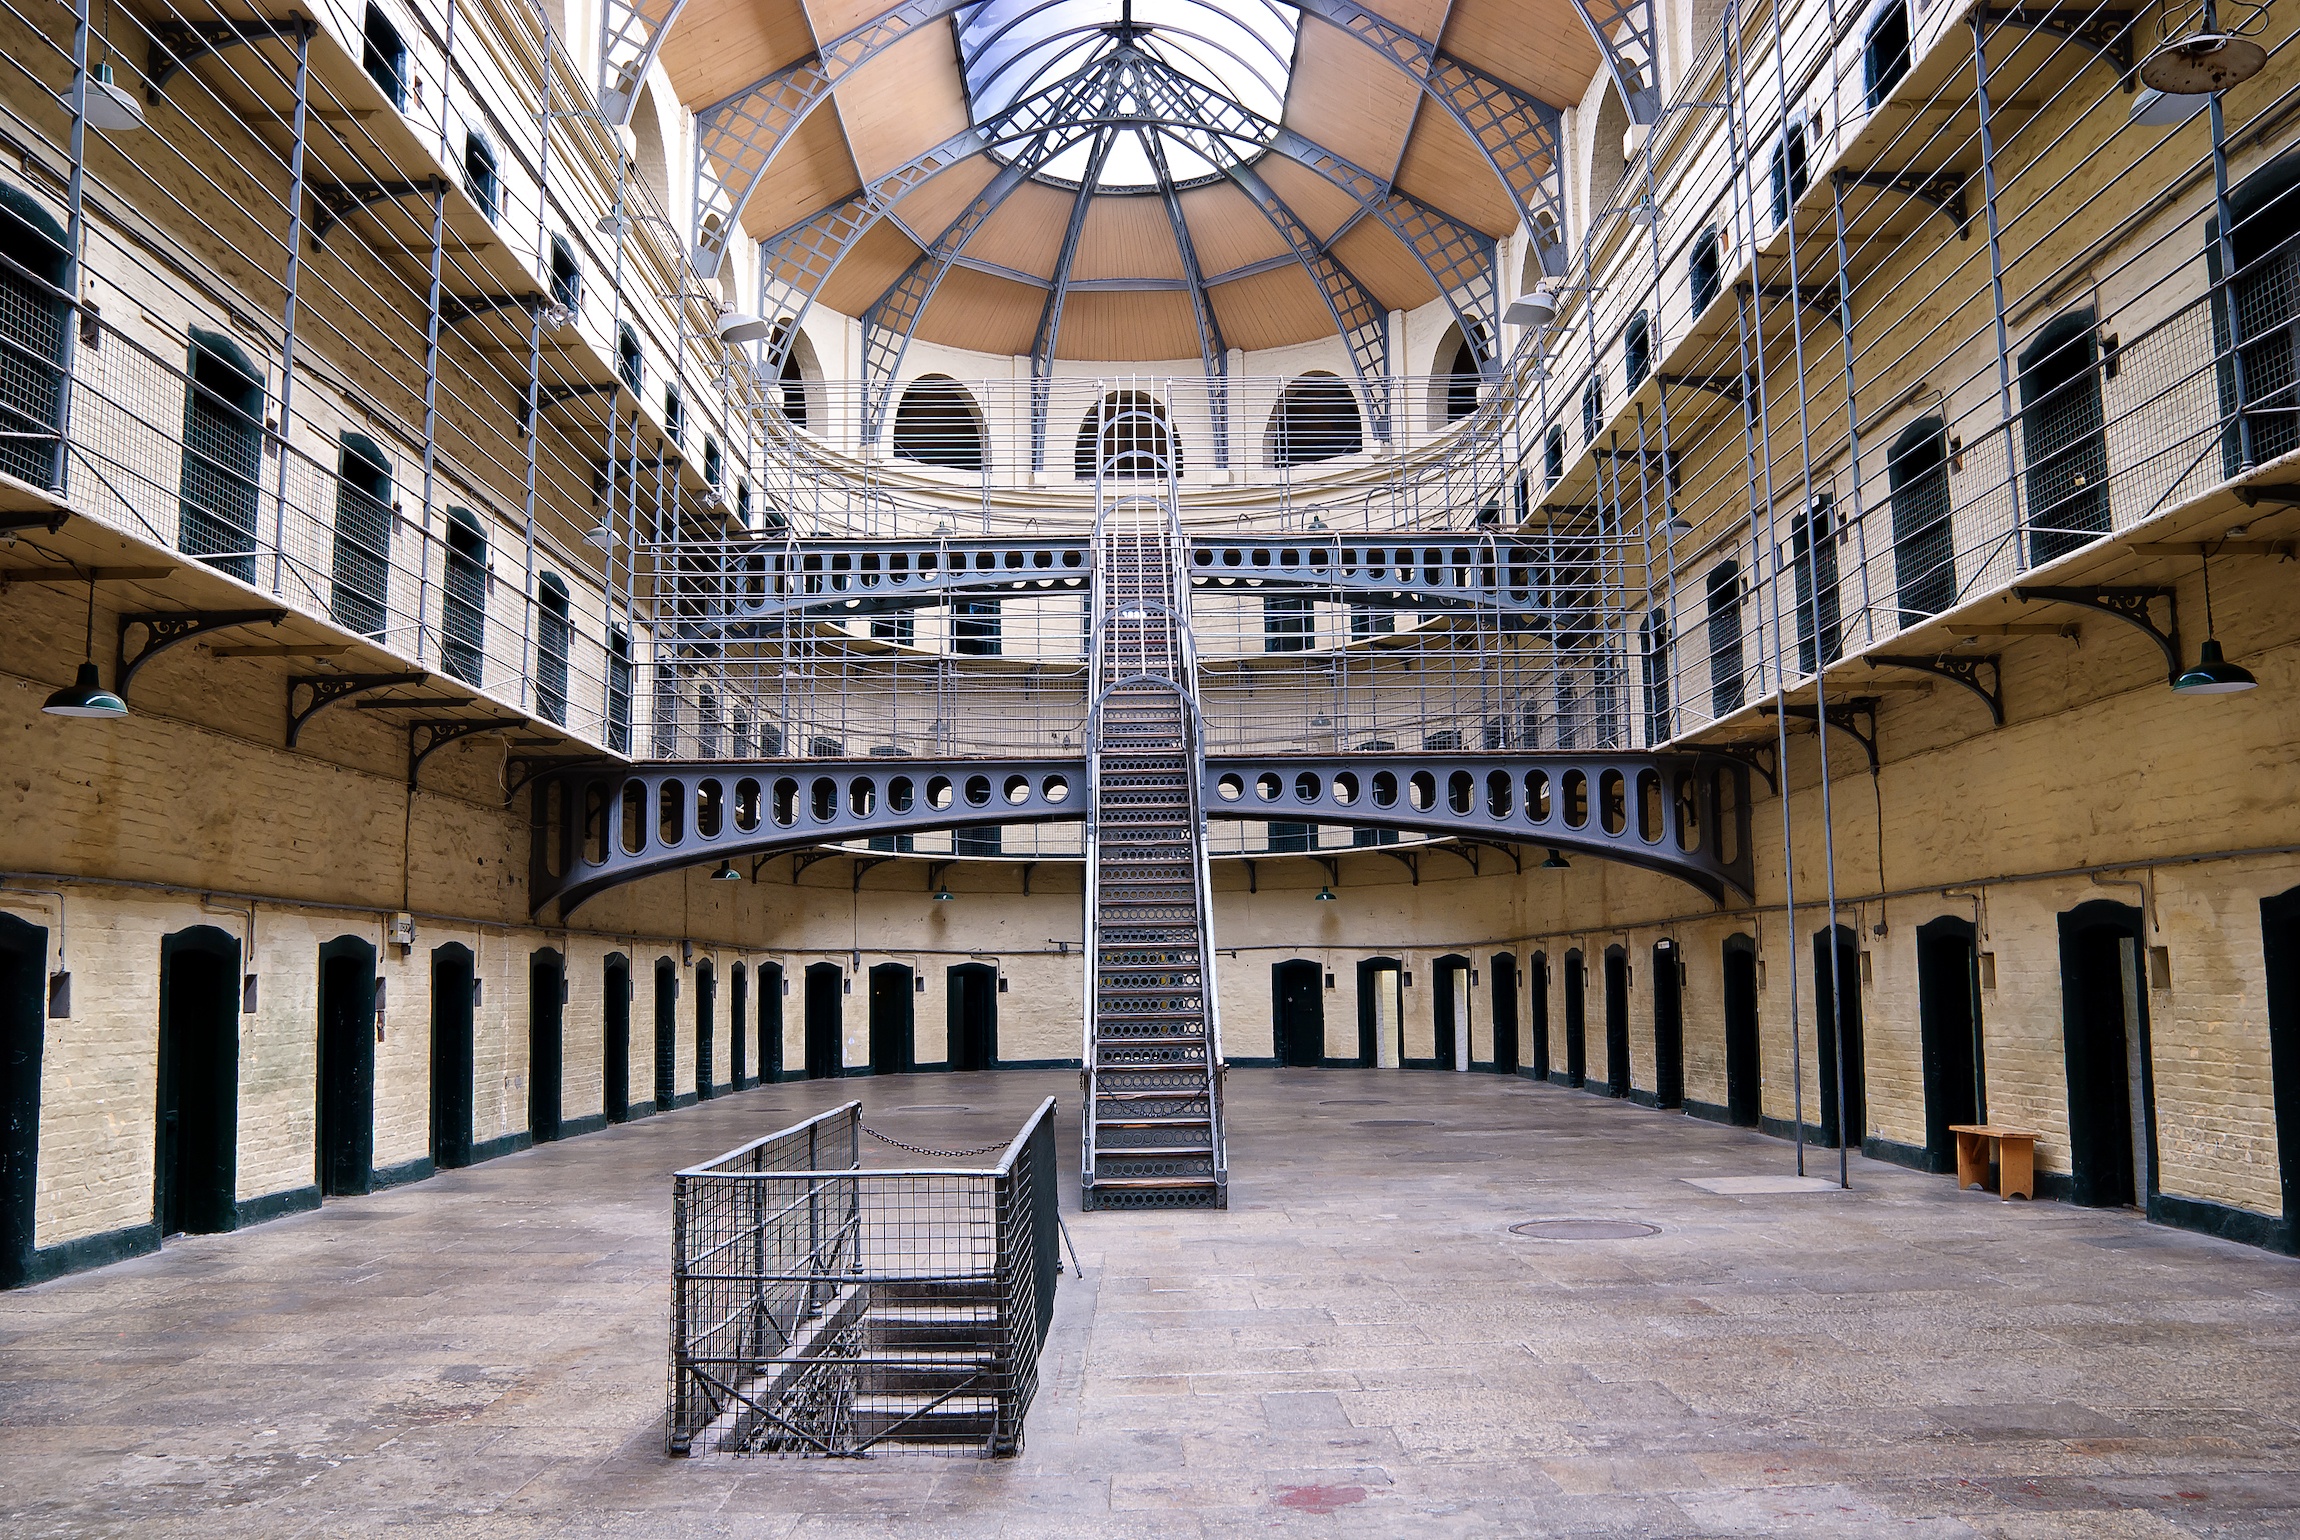 Kilmainham Gaol (irlandzki: Príosún Chill Mhaighneann) — dawne więzienie położone w Kilmainham w Dublinie i odegrało ważną rolę w historii Irlandii.